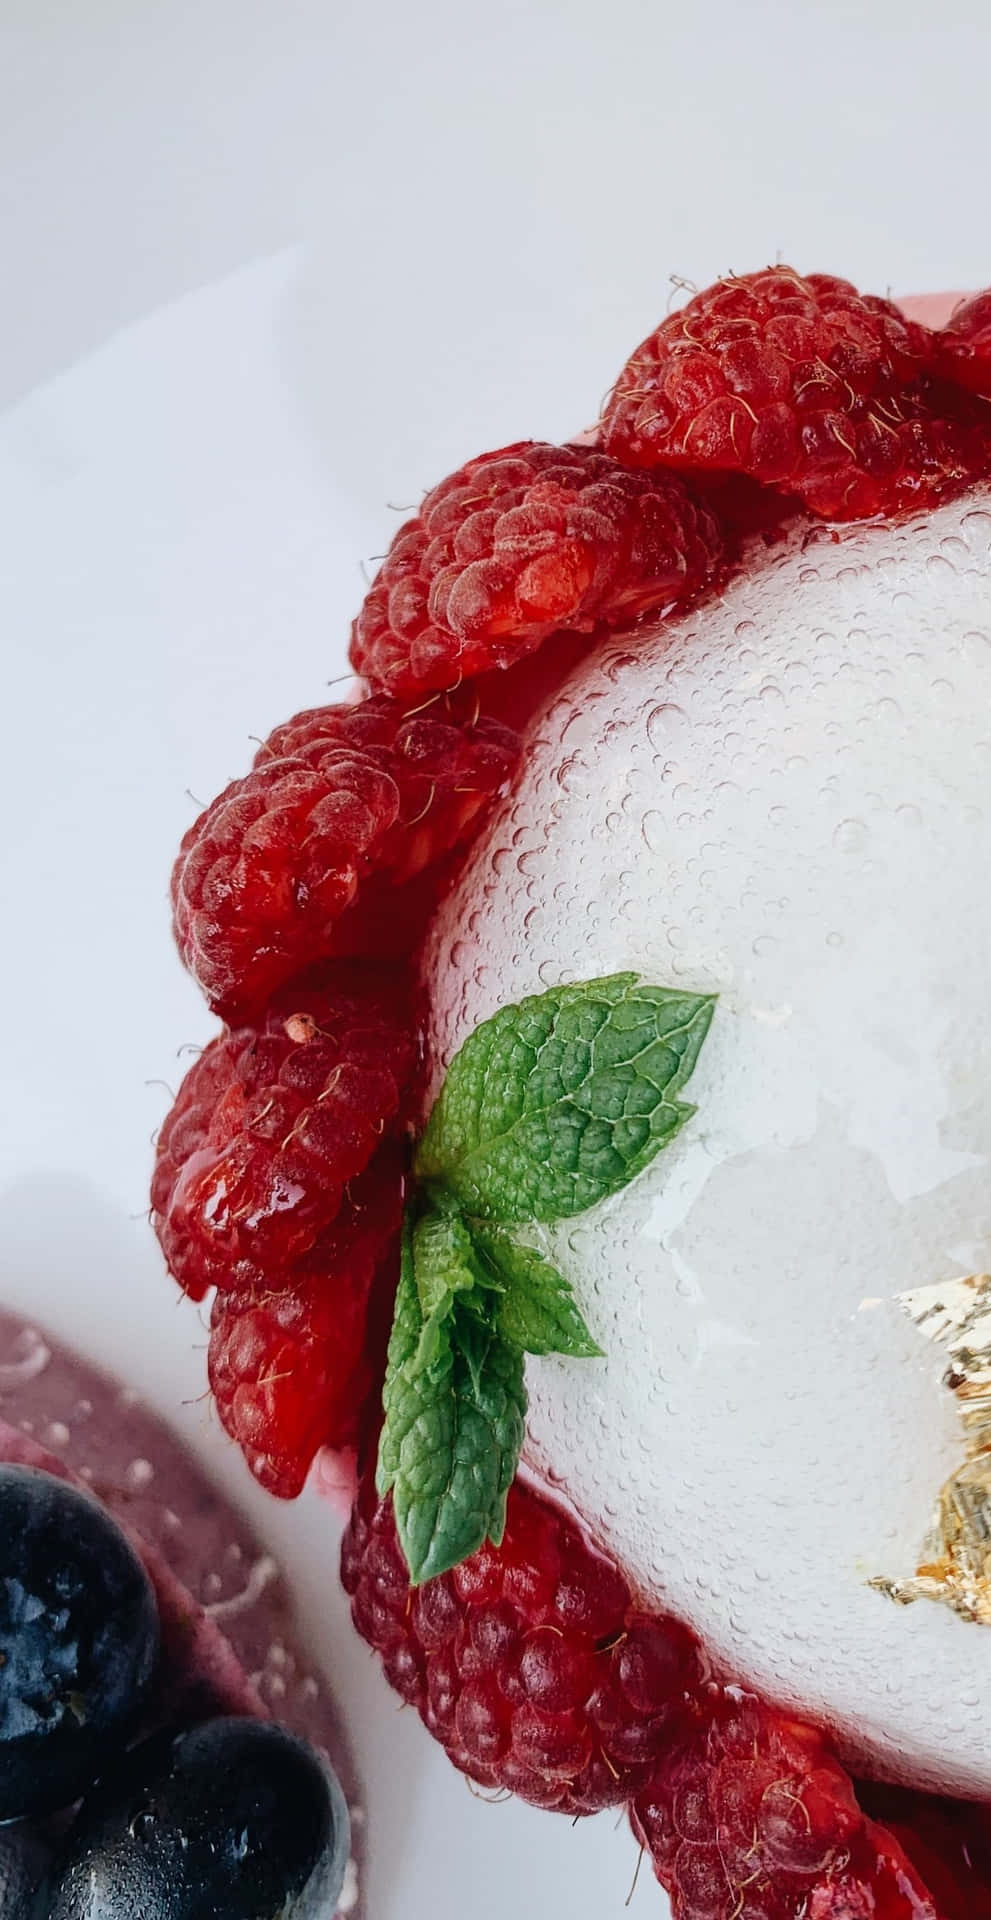 Genießensie Köstliche Desserts Und Atemberaubende Bilder Mit Dem Fortschrittlichen Pixel 3 Smartphone.